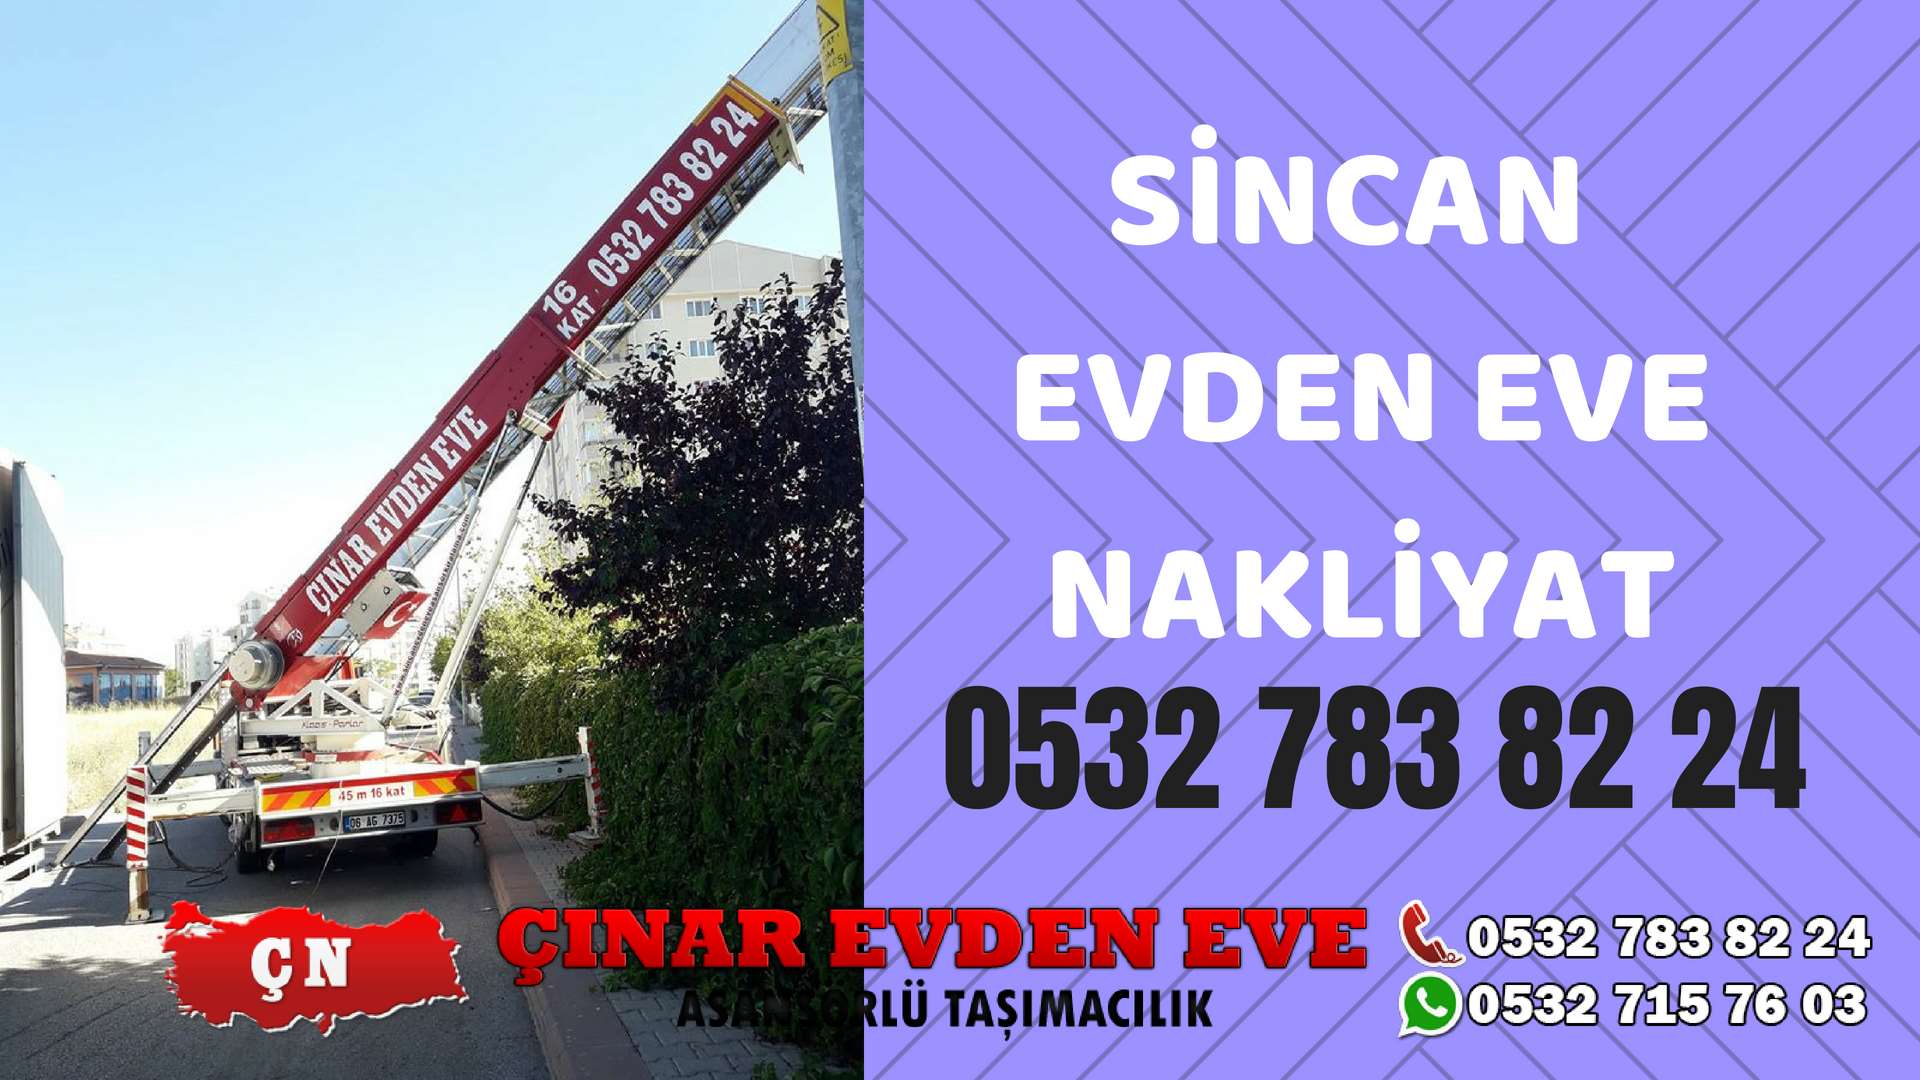 Ankara Ayaş Sincan Evden Eve Nakliyat, Asansörlü Taşıma Çınar Nakliyat Sincan 0532 715 76 03